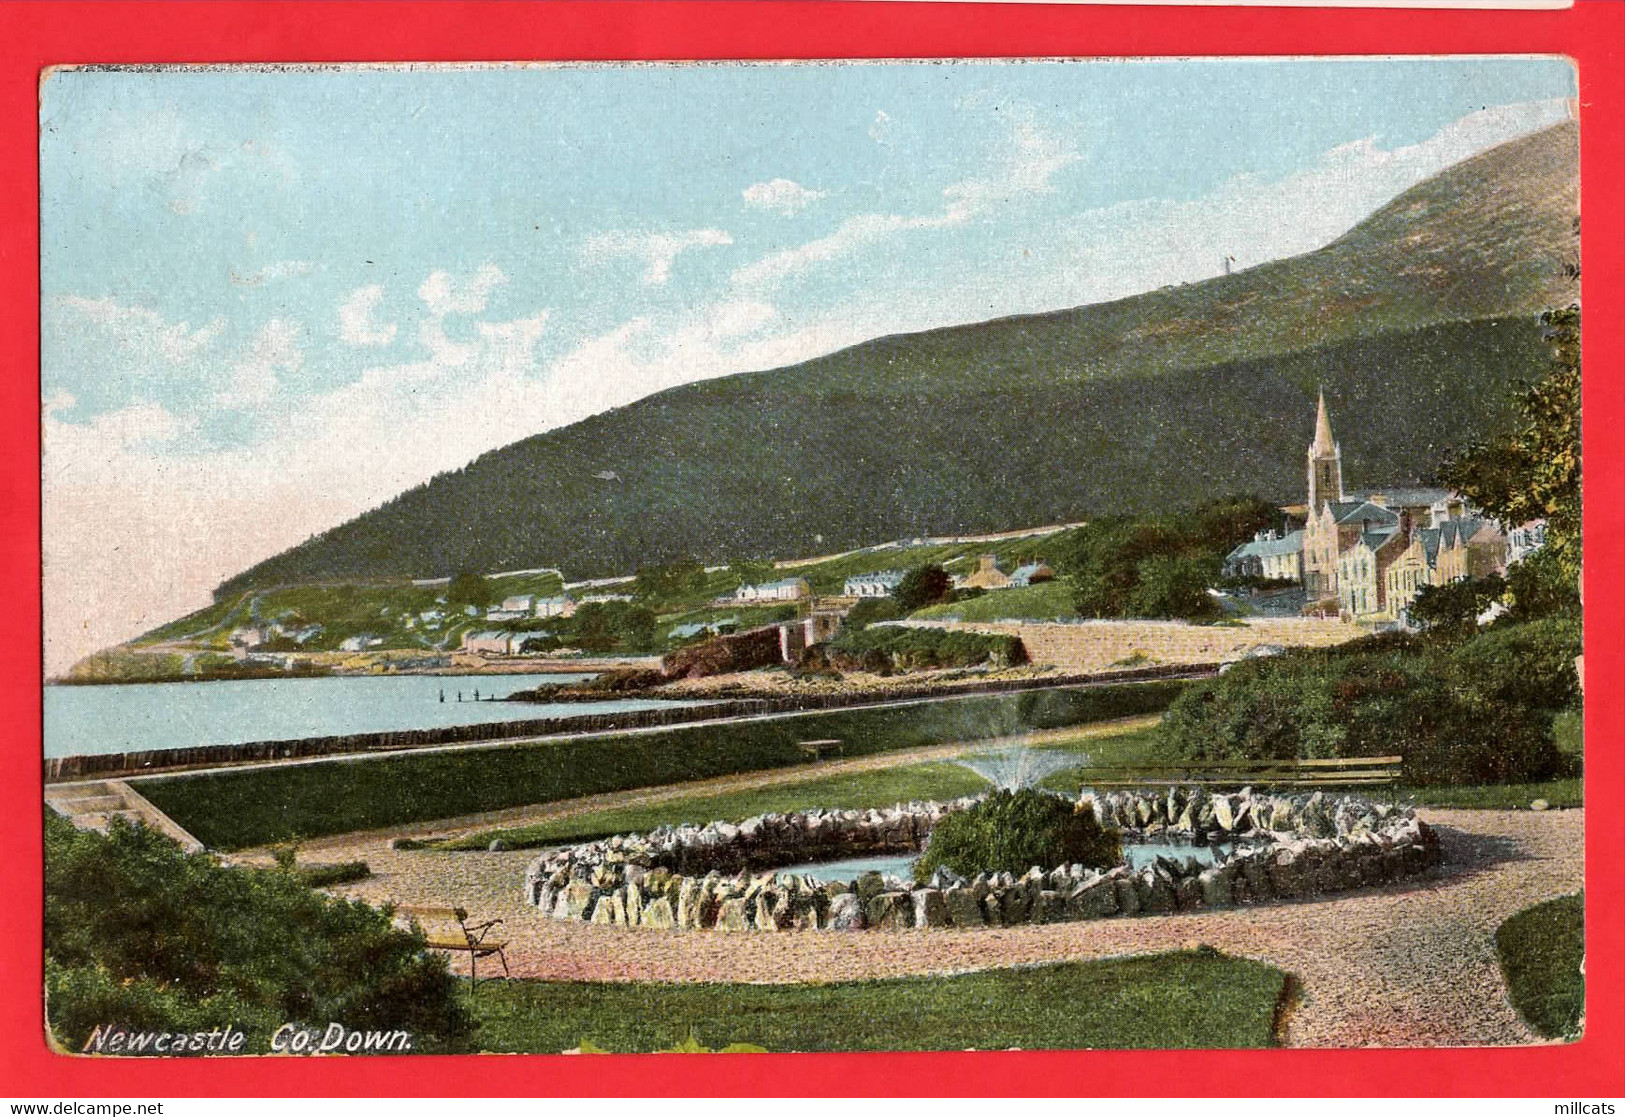 N IRELAND CO DOWN  NEWCASTLE  VIEW TO CHURCH  Pu 1906 - Down